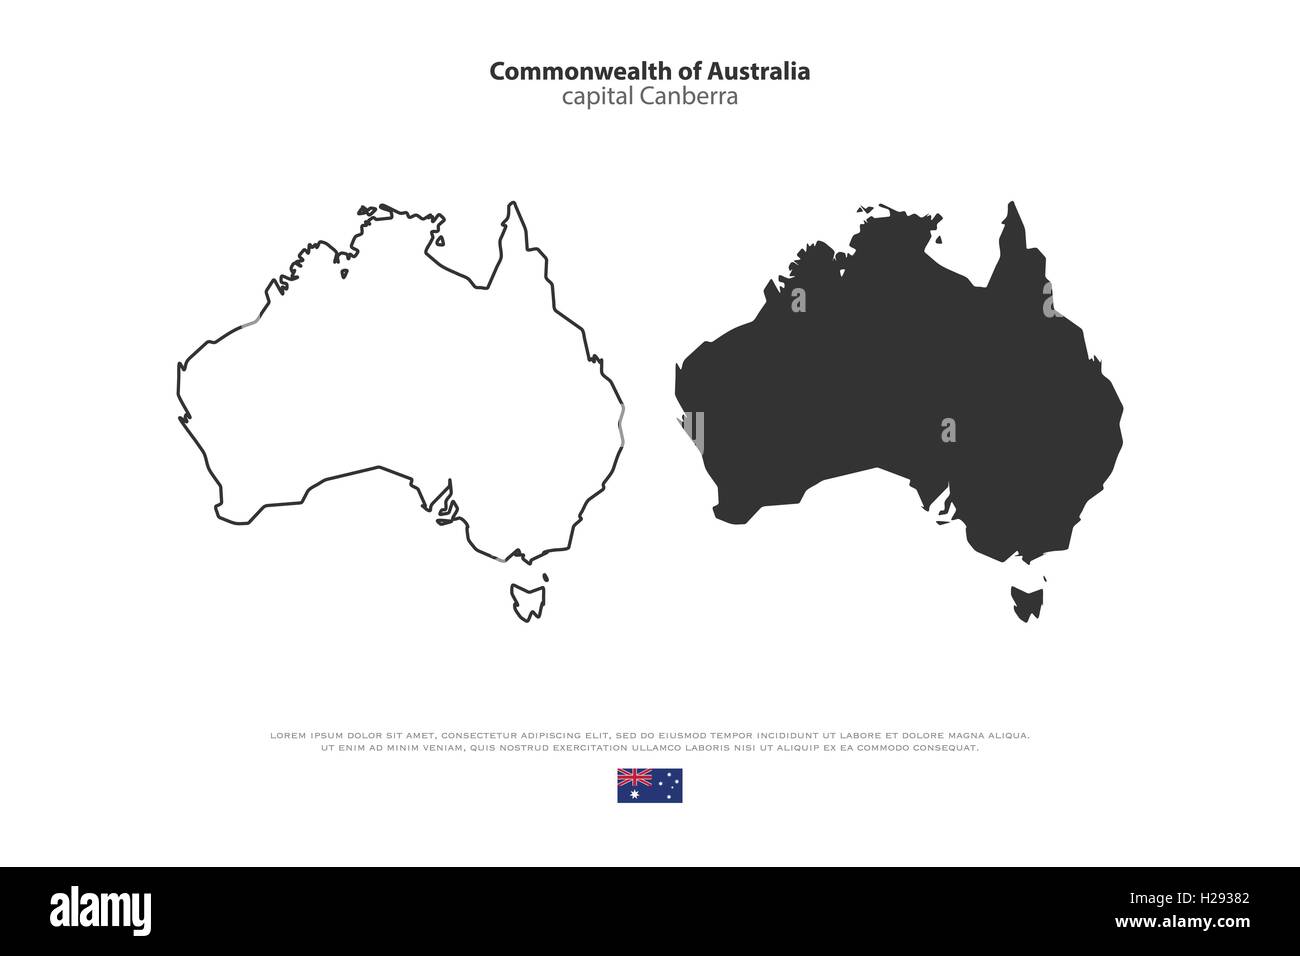 Commonwealth of Australia isoliert Karte und offizielle Flaggen-Icons. Vektor-australische politische Karte der Kontinente. Aussie geographische Verbot Stock Vektor